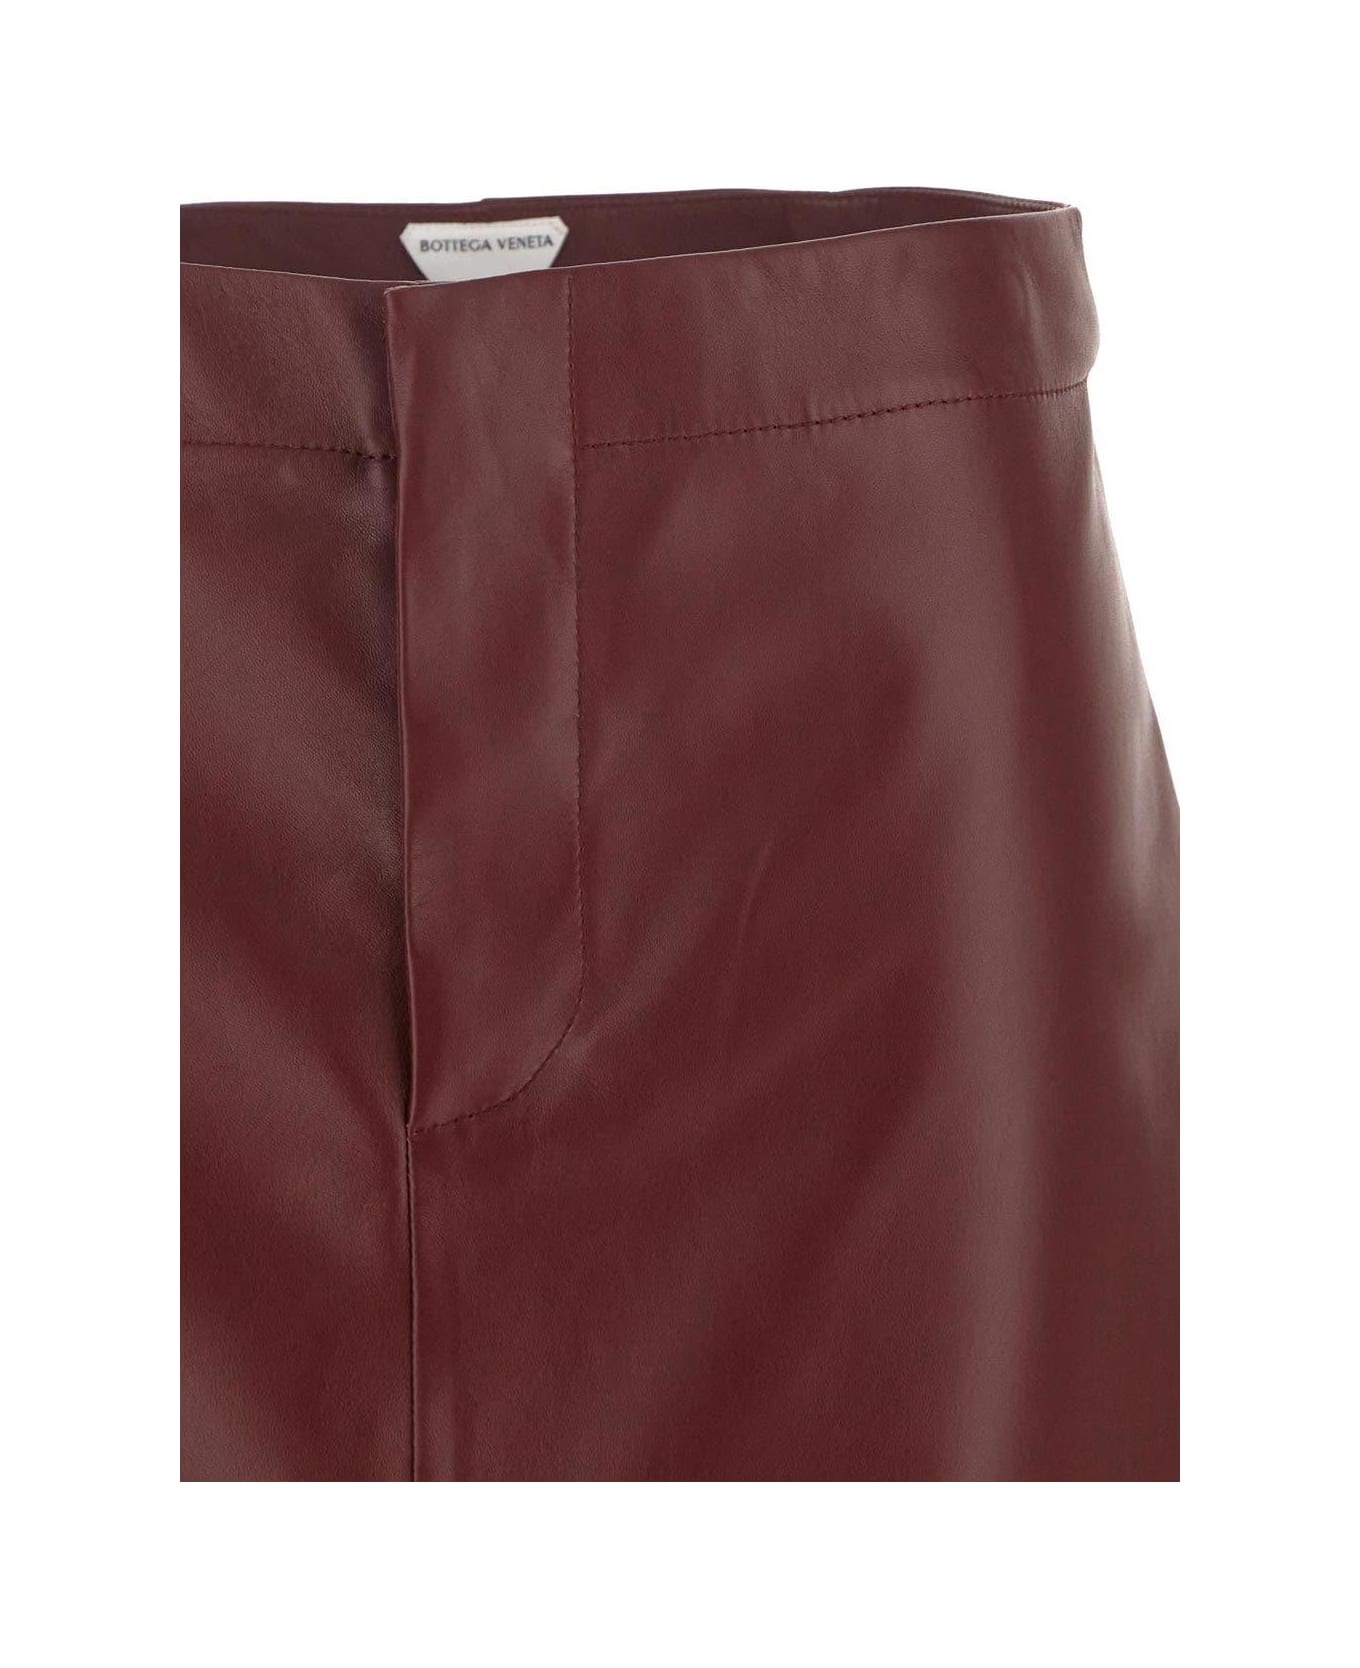 Bottega Veneta Leather Skirt - Red